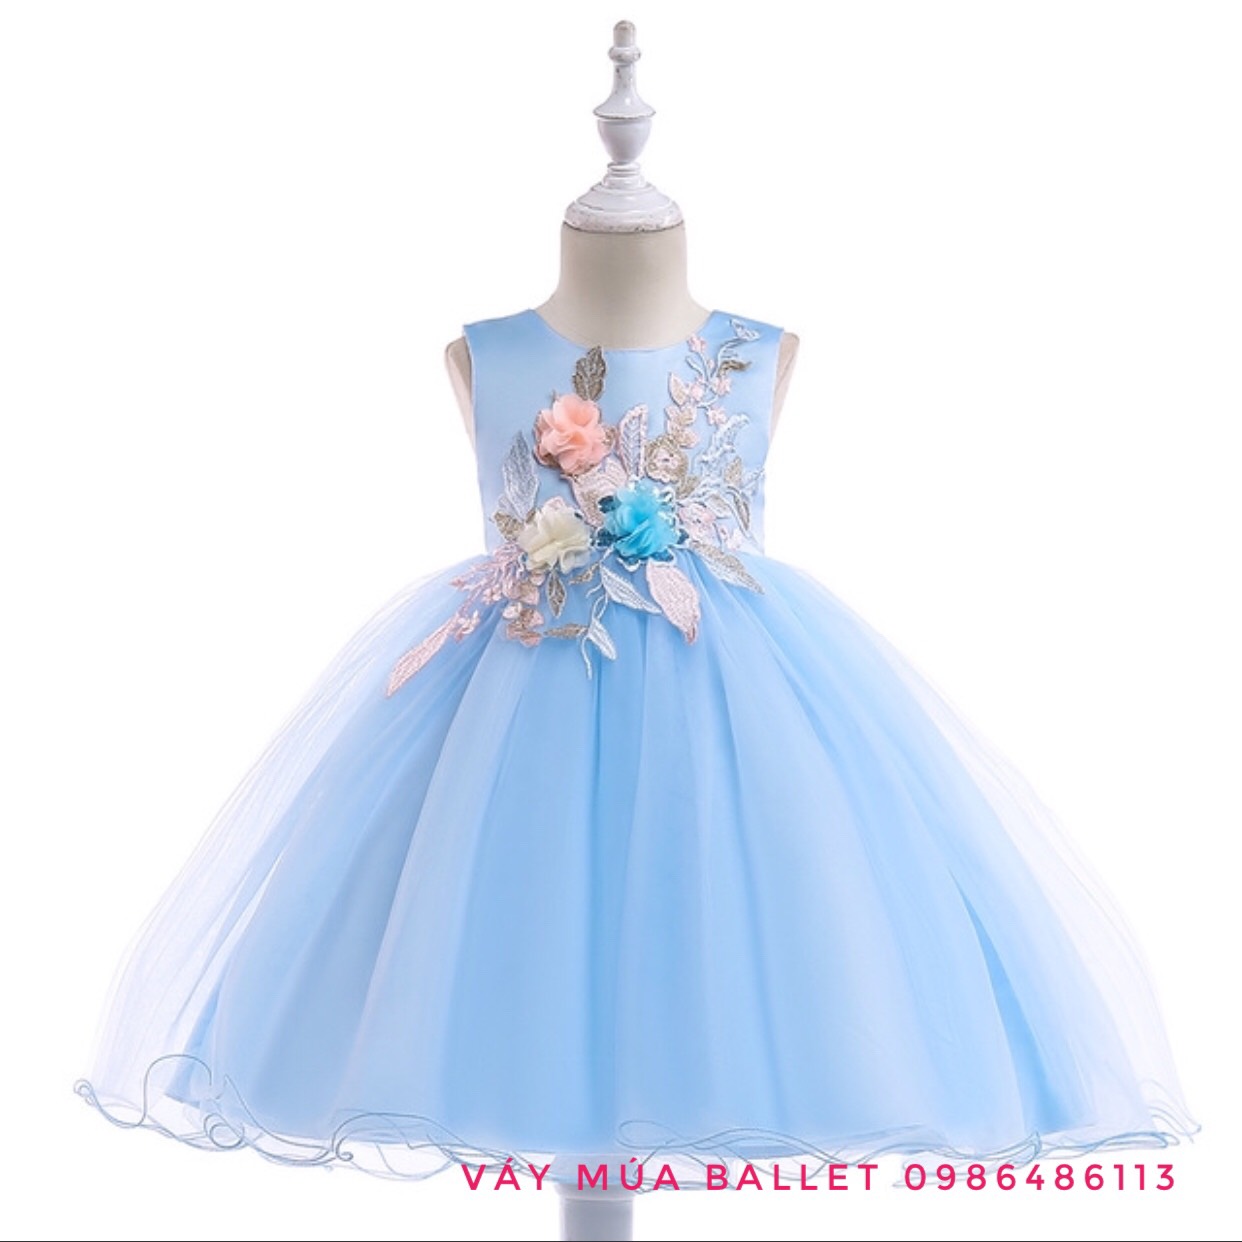 Váy Babidiboo công chúa màu xanh elsa size 110-140 SHIN Baby Closet